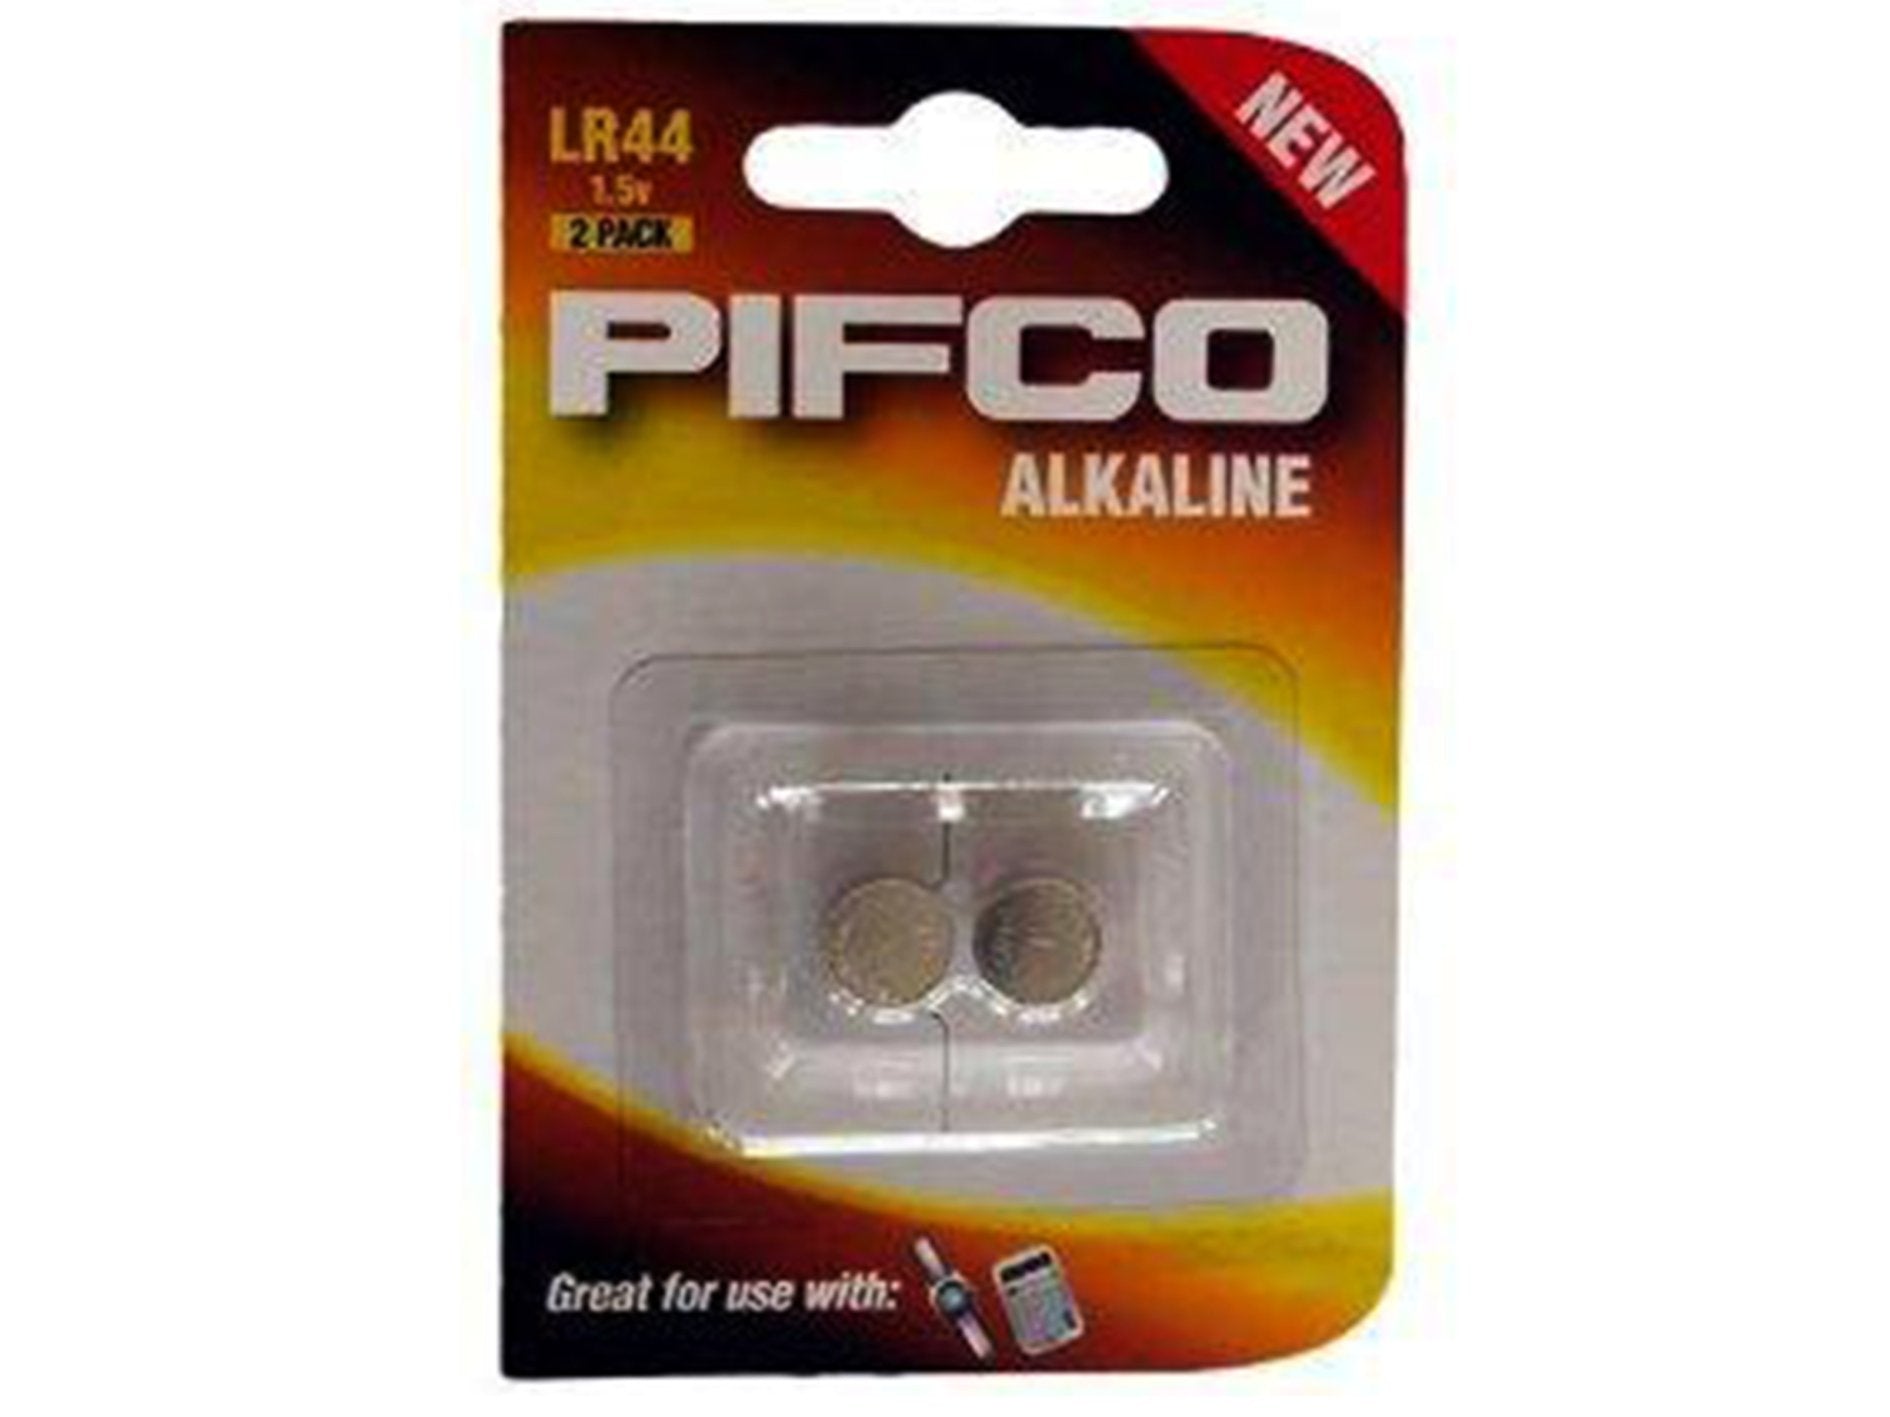 PIFCO LR44 Alkaline - VIR Wholesale